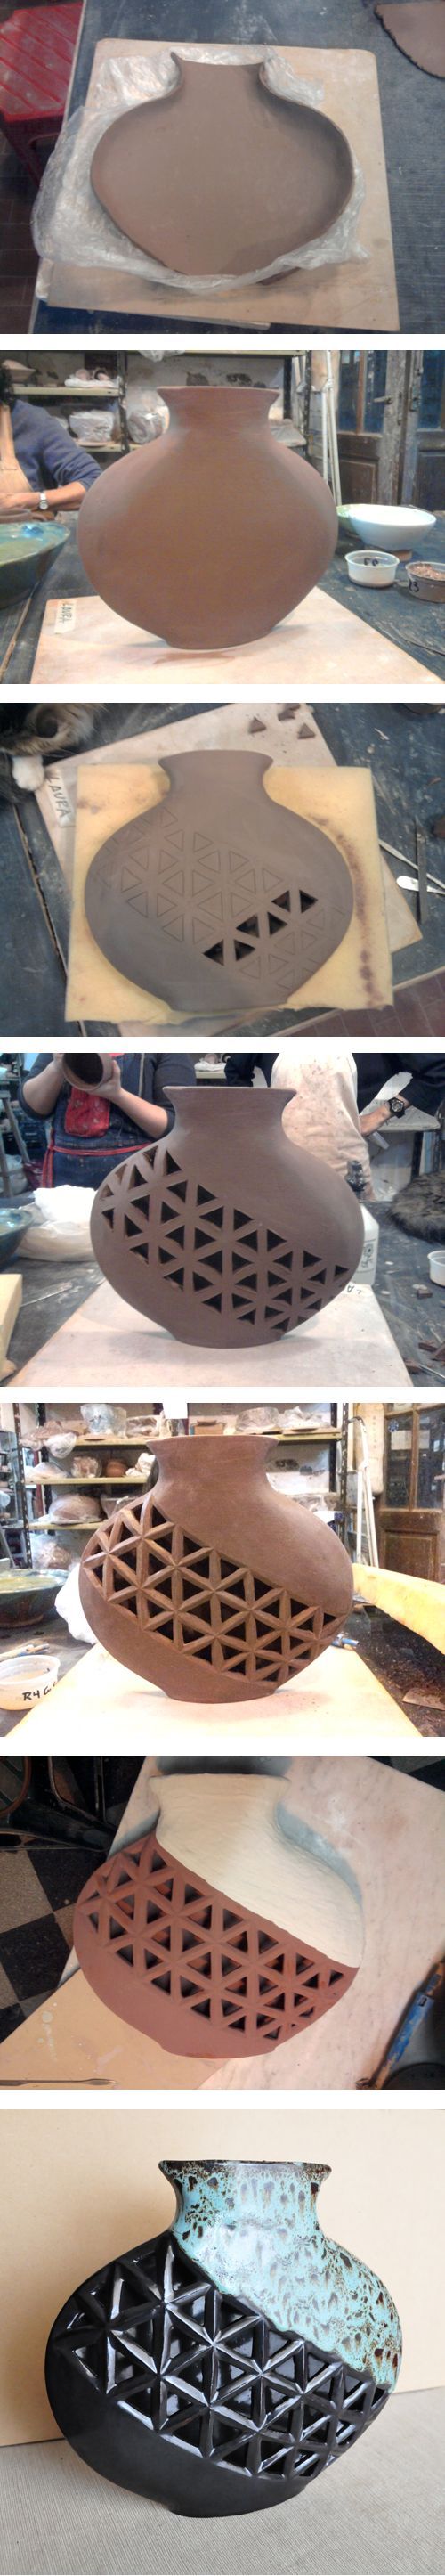 Proceso de creación de jarrón en cerámica